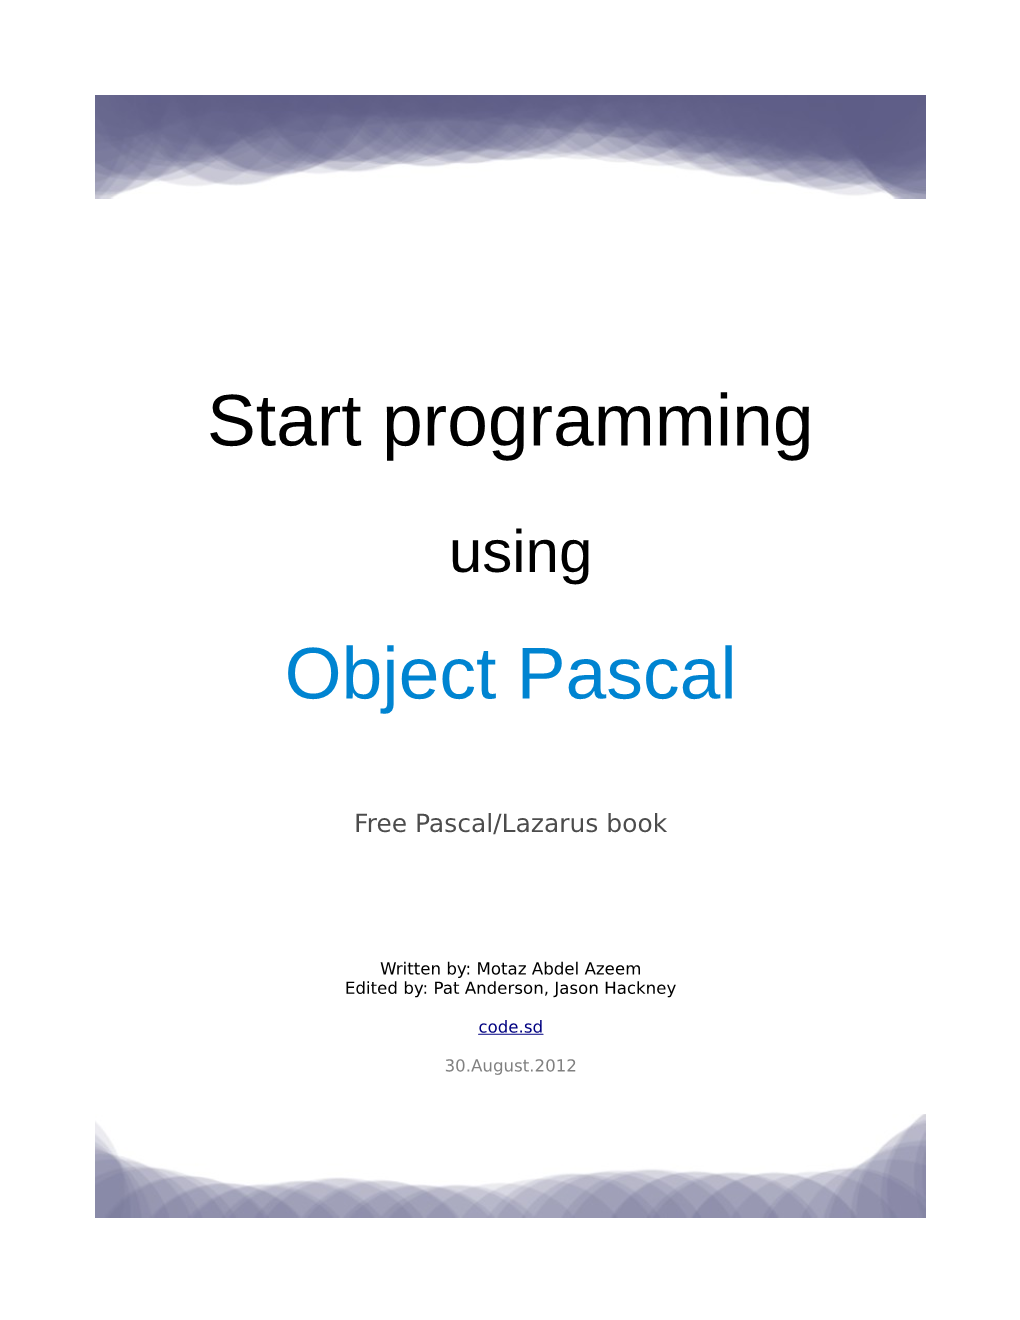 Start Programming Object Pascal